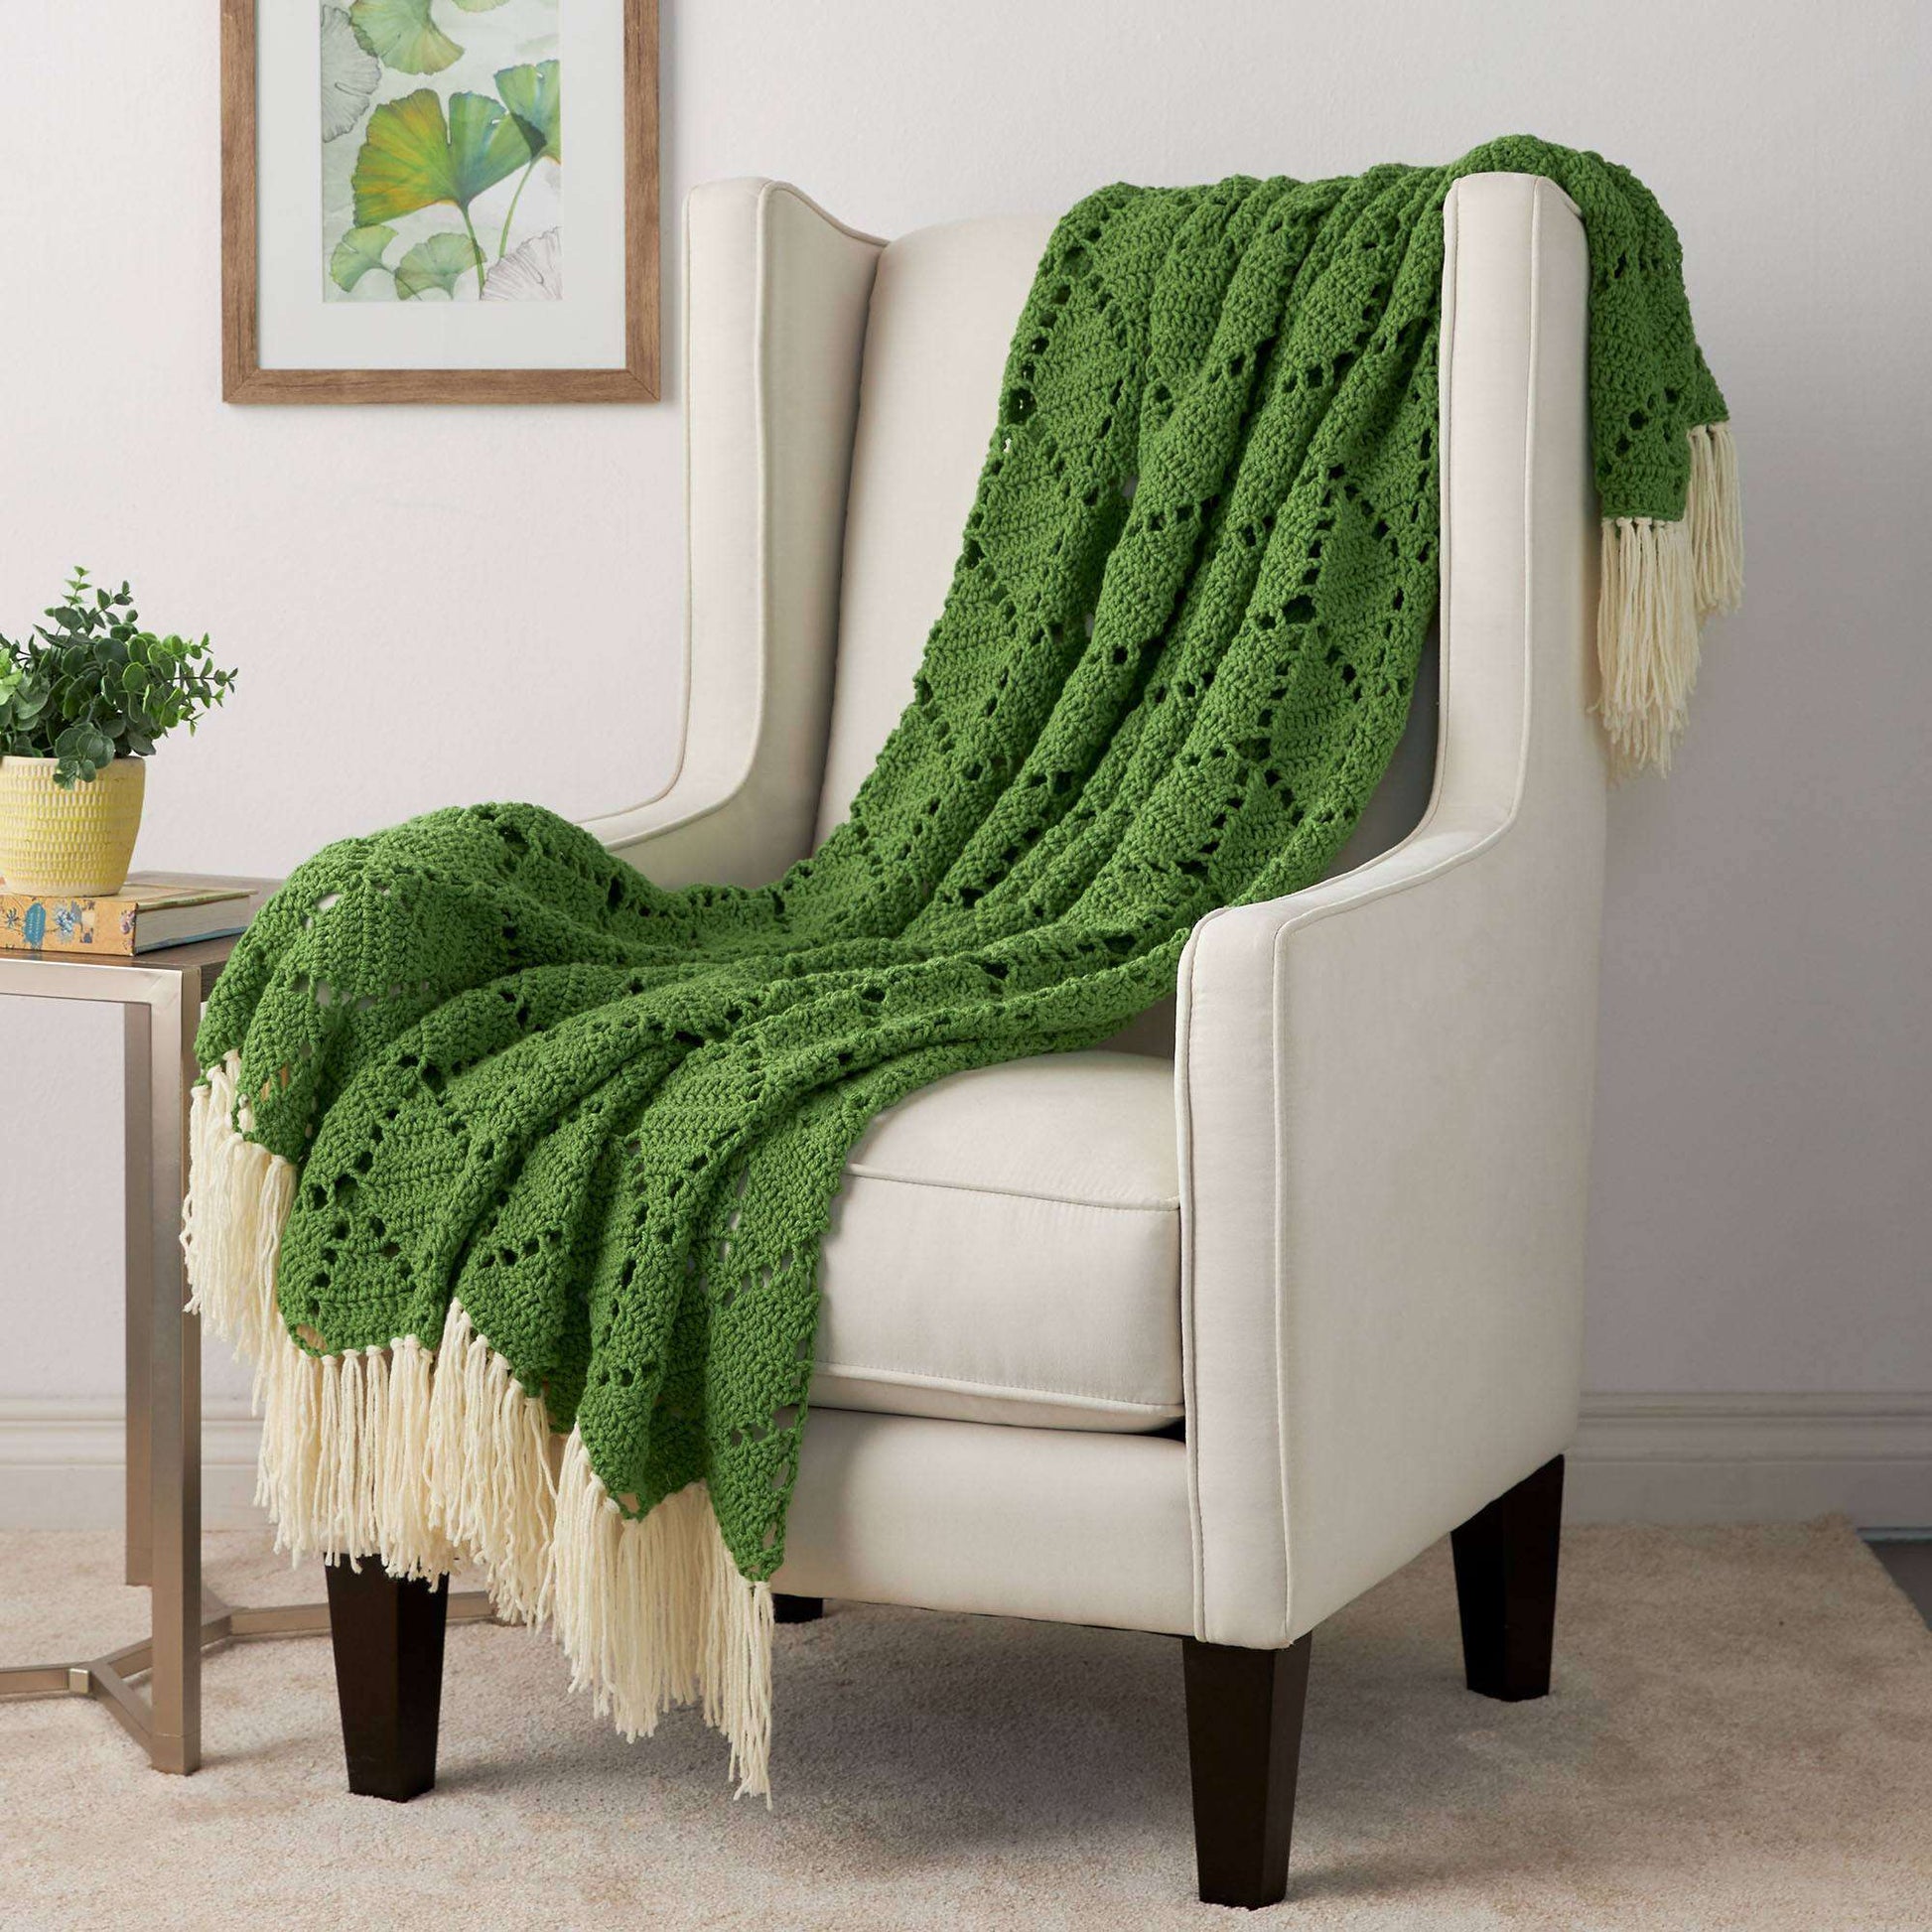 Free Bernat Growing Ivy Crochet Blanket Pattern